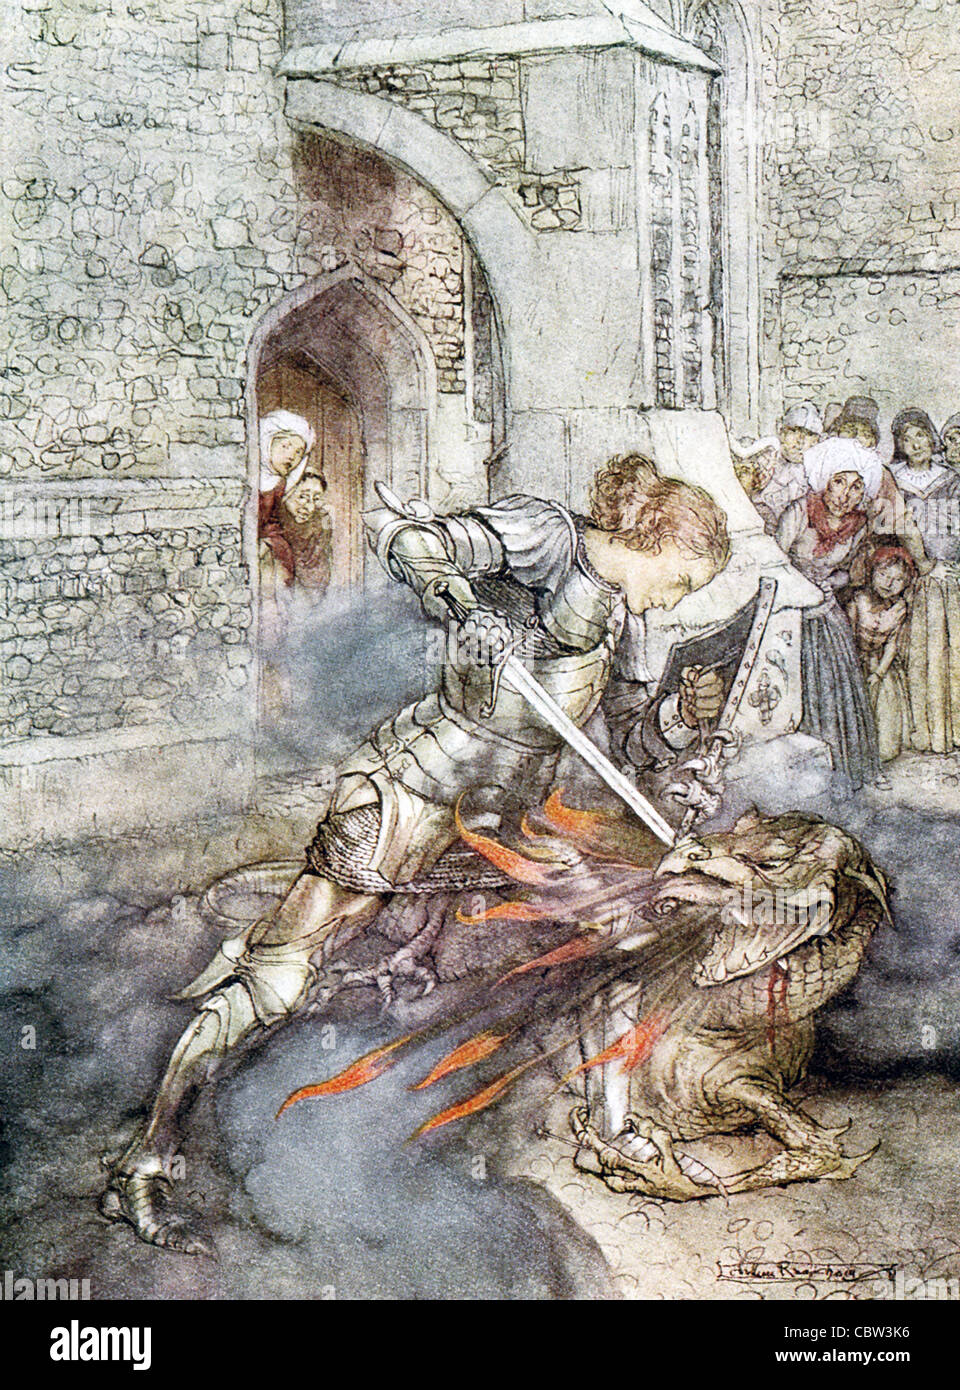 Dans la légende arthurienne, Lancelot (illustré ici) et Tristan sont les deux chevaliers de la Table ronde et dragon slayers. Banque D'Images